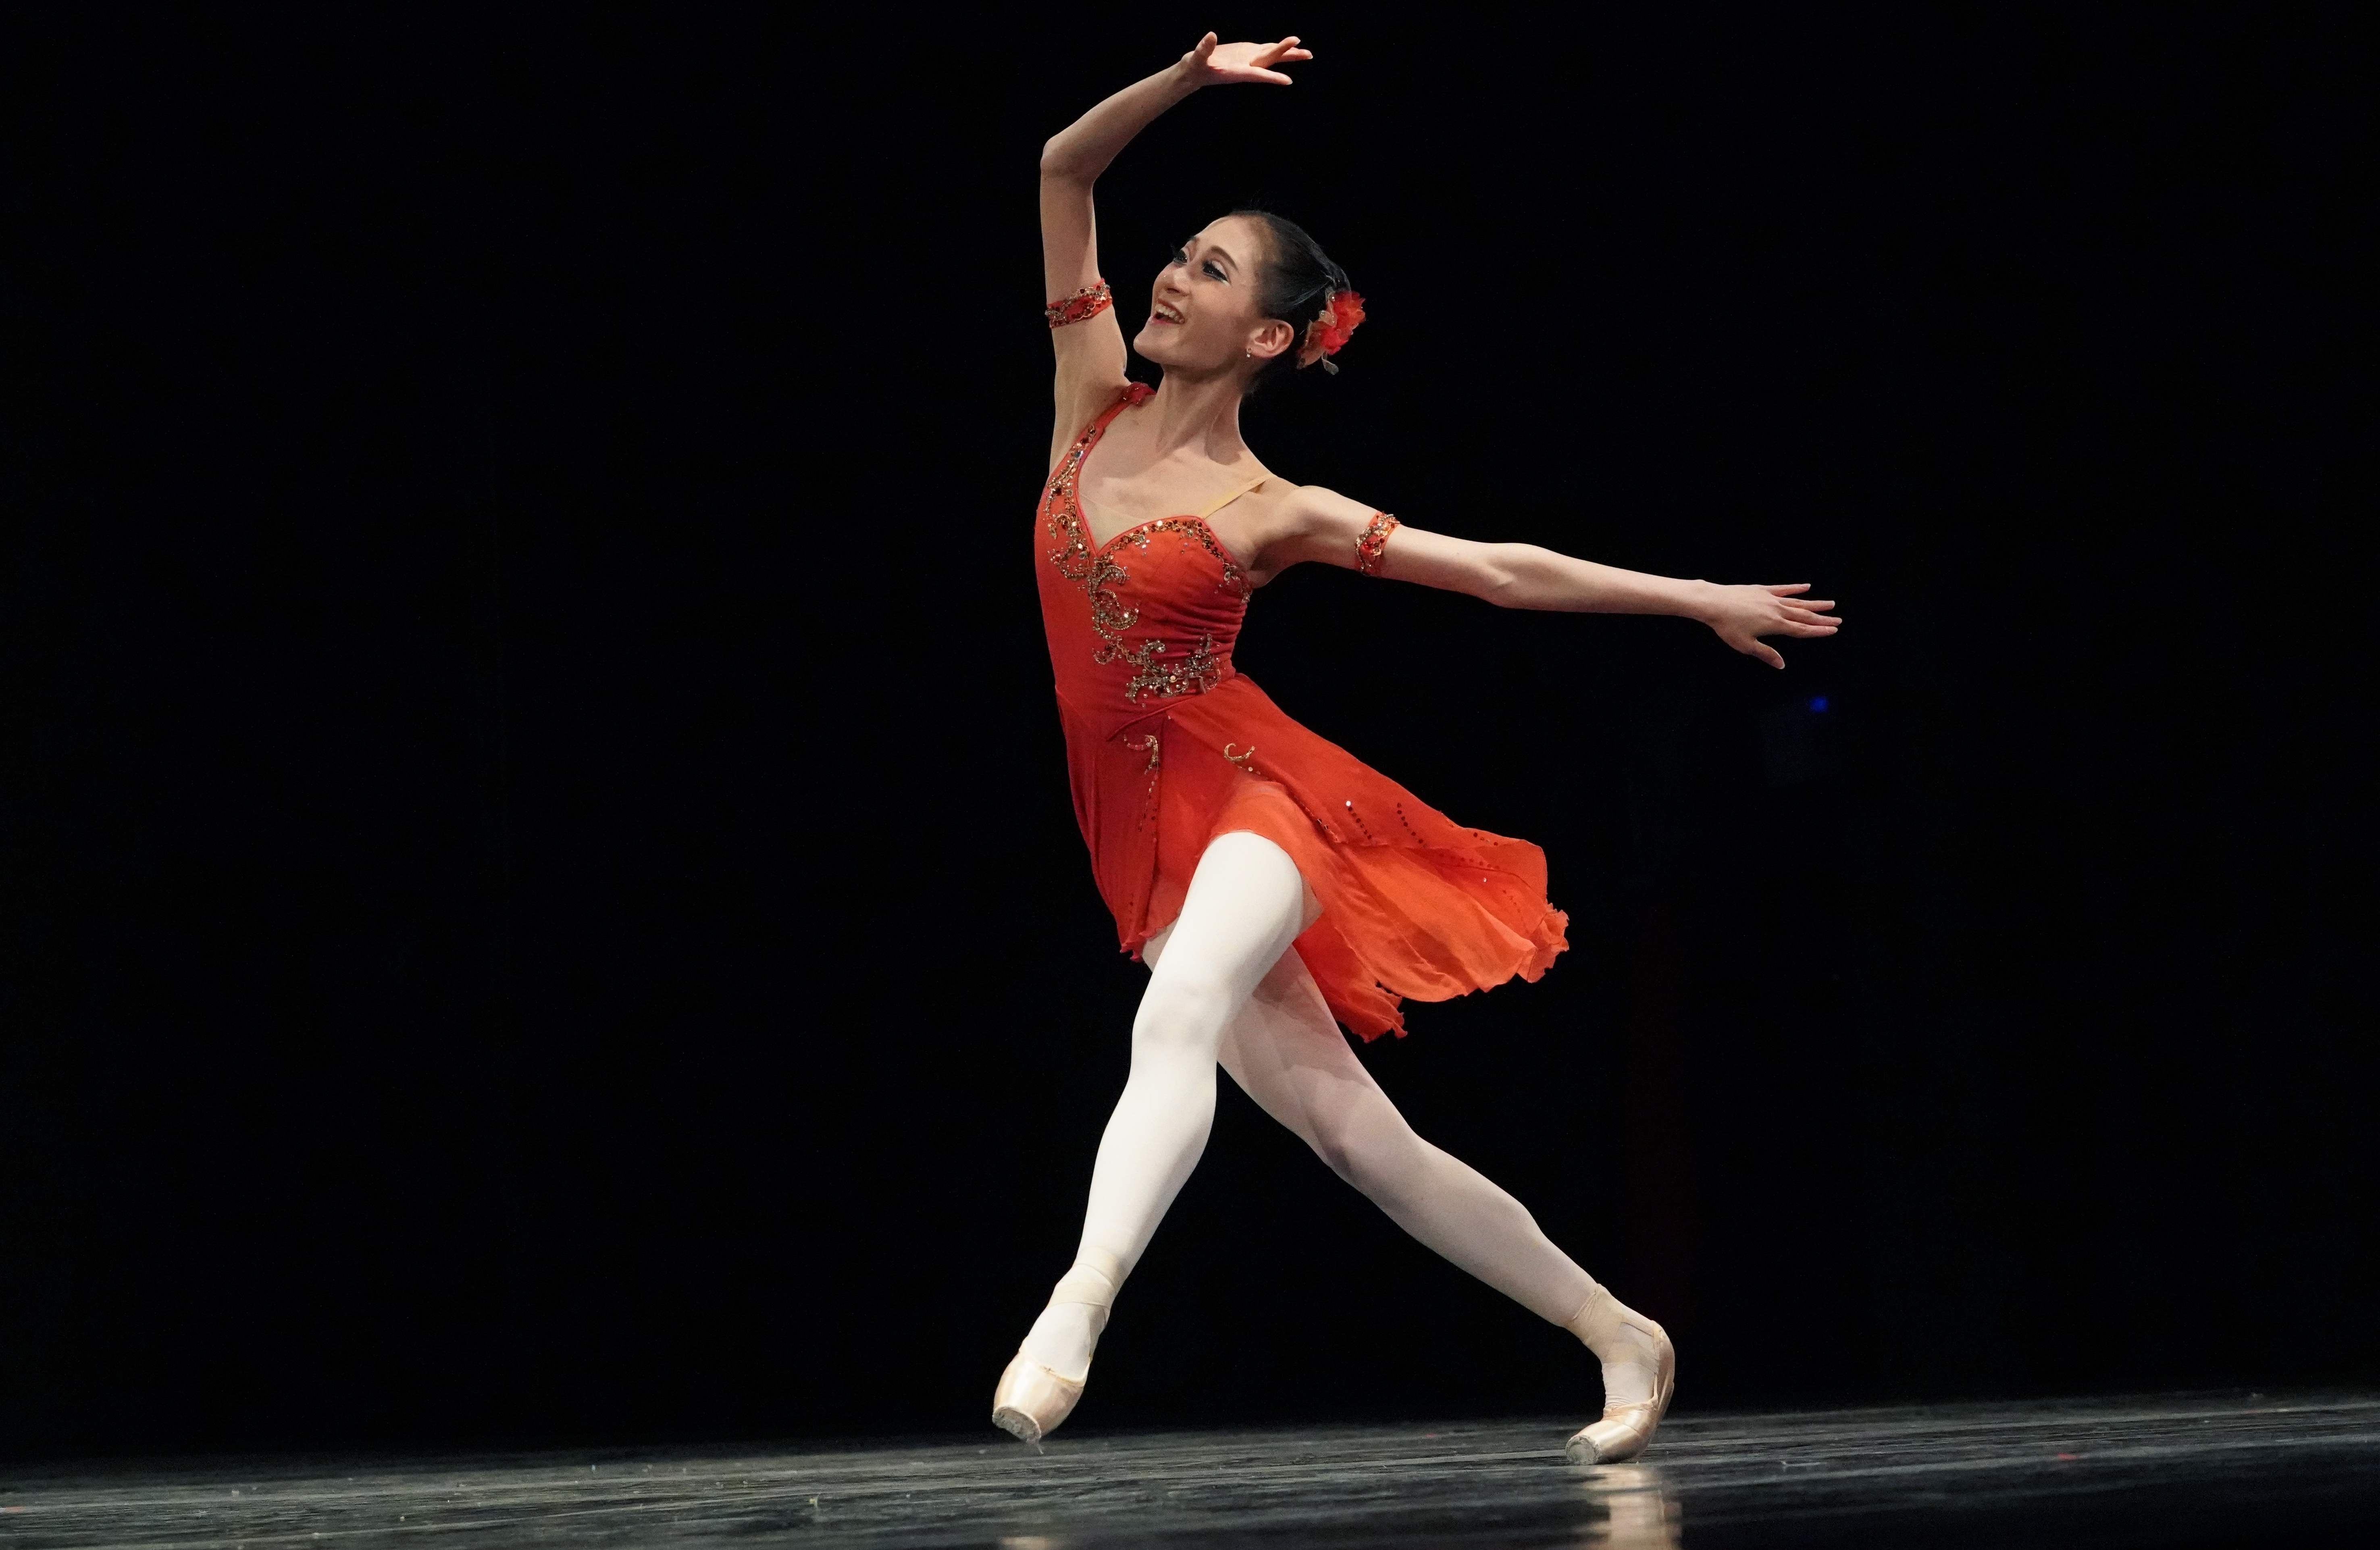 3月19日,在美国纽约,来自韩国的芭蕾舞演员参加比赛